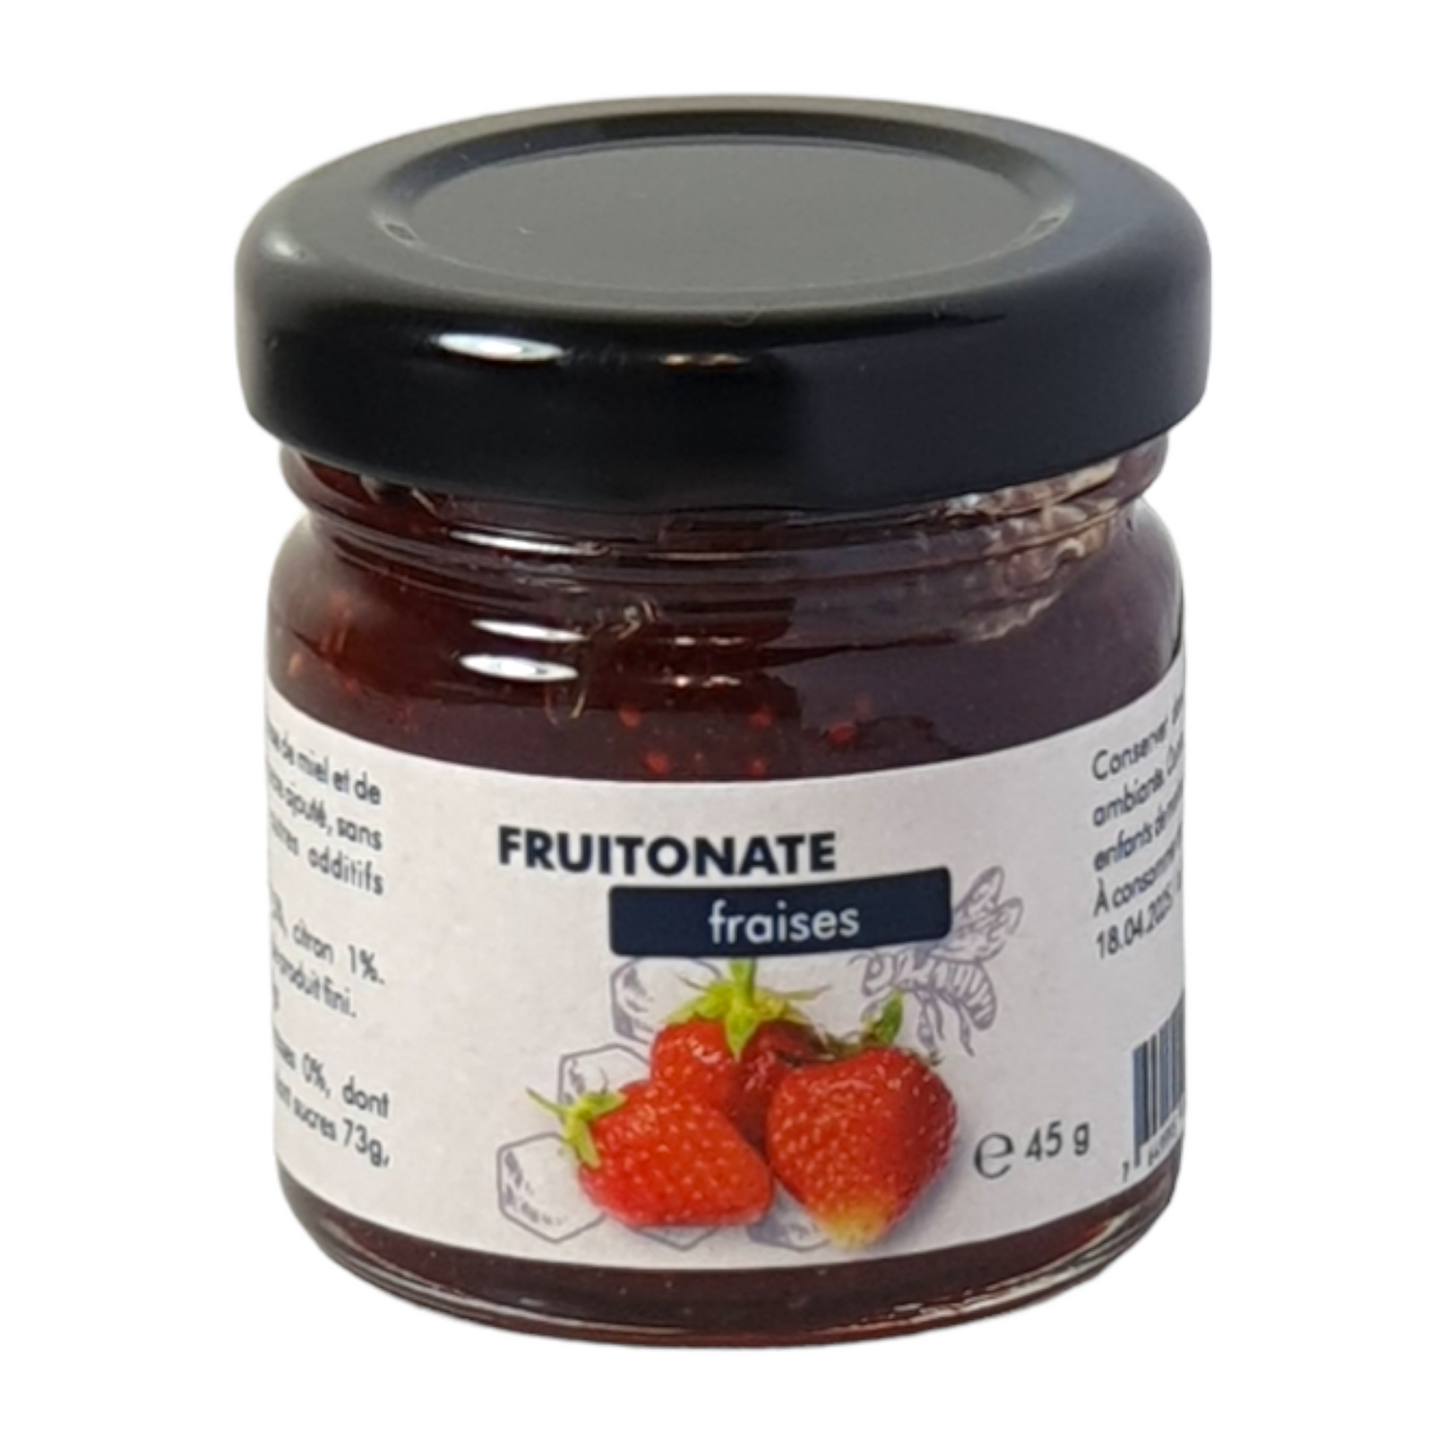 
                  
                    FRUITONATE - Strawberries 45g
                  
                